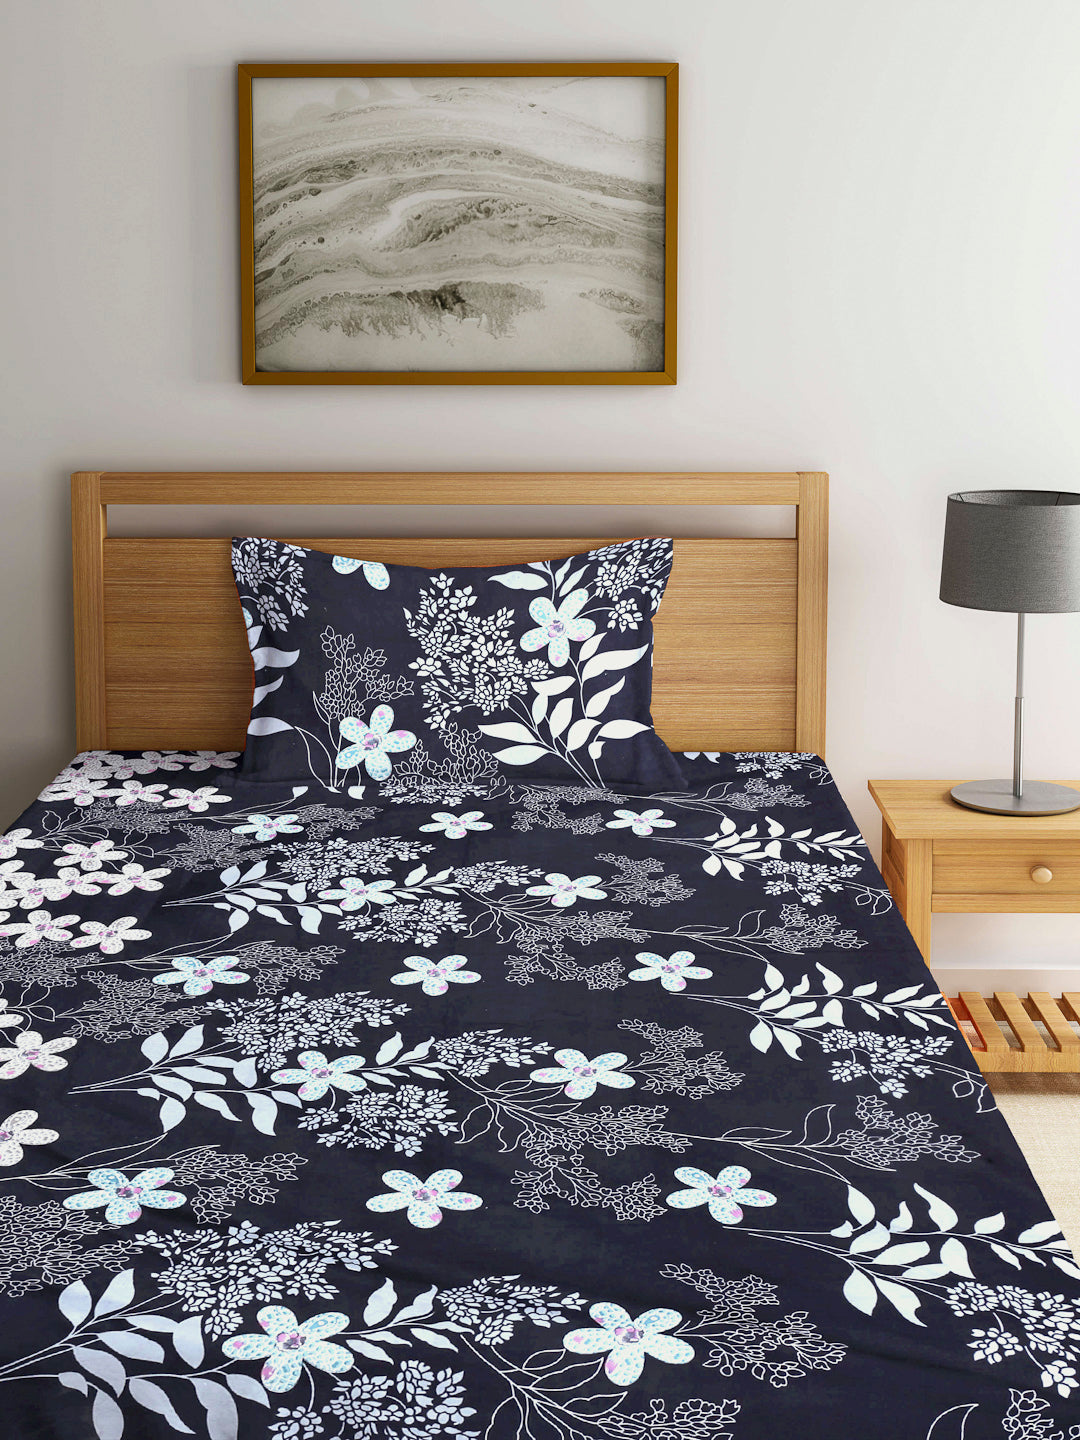 Arrabi Black Floral TC Cotton Blend Single Size Bedsheet with 1 Pillow Cover (220 x 150 cm)